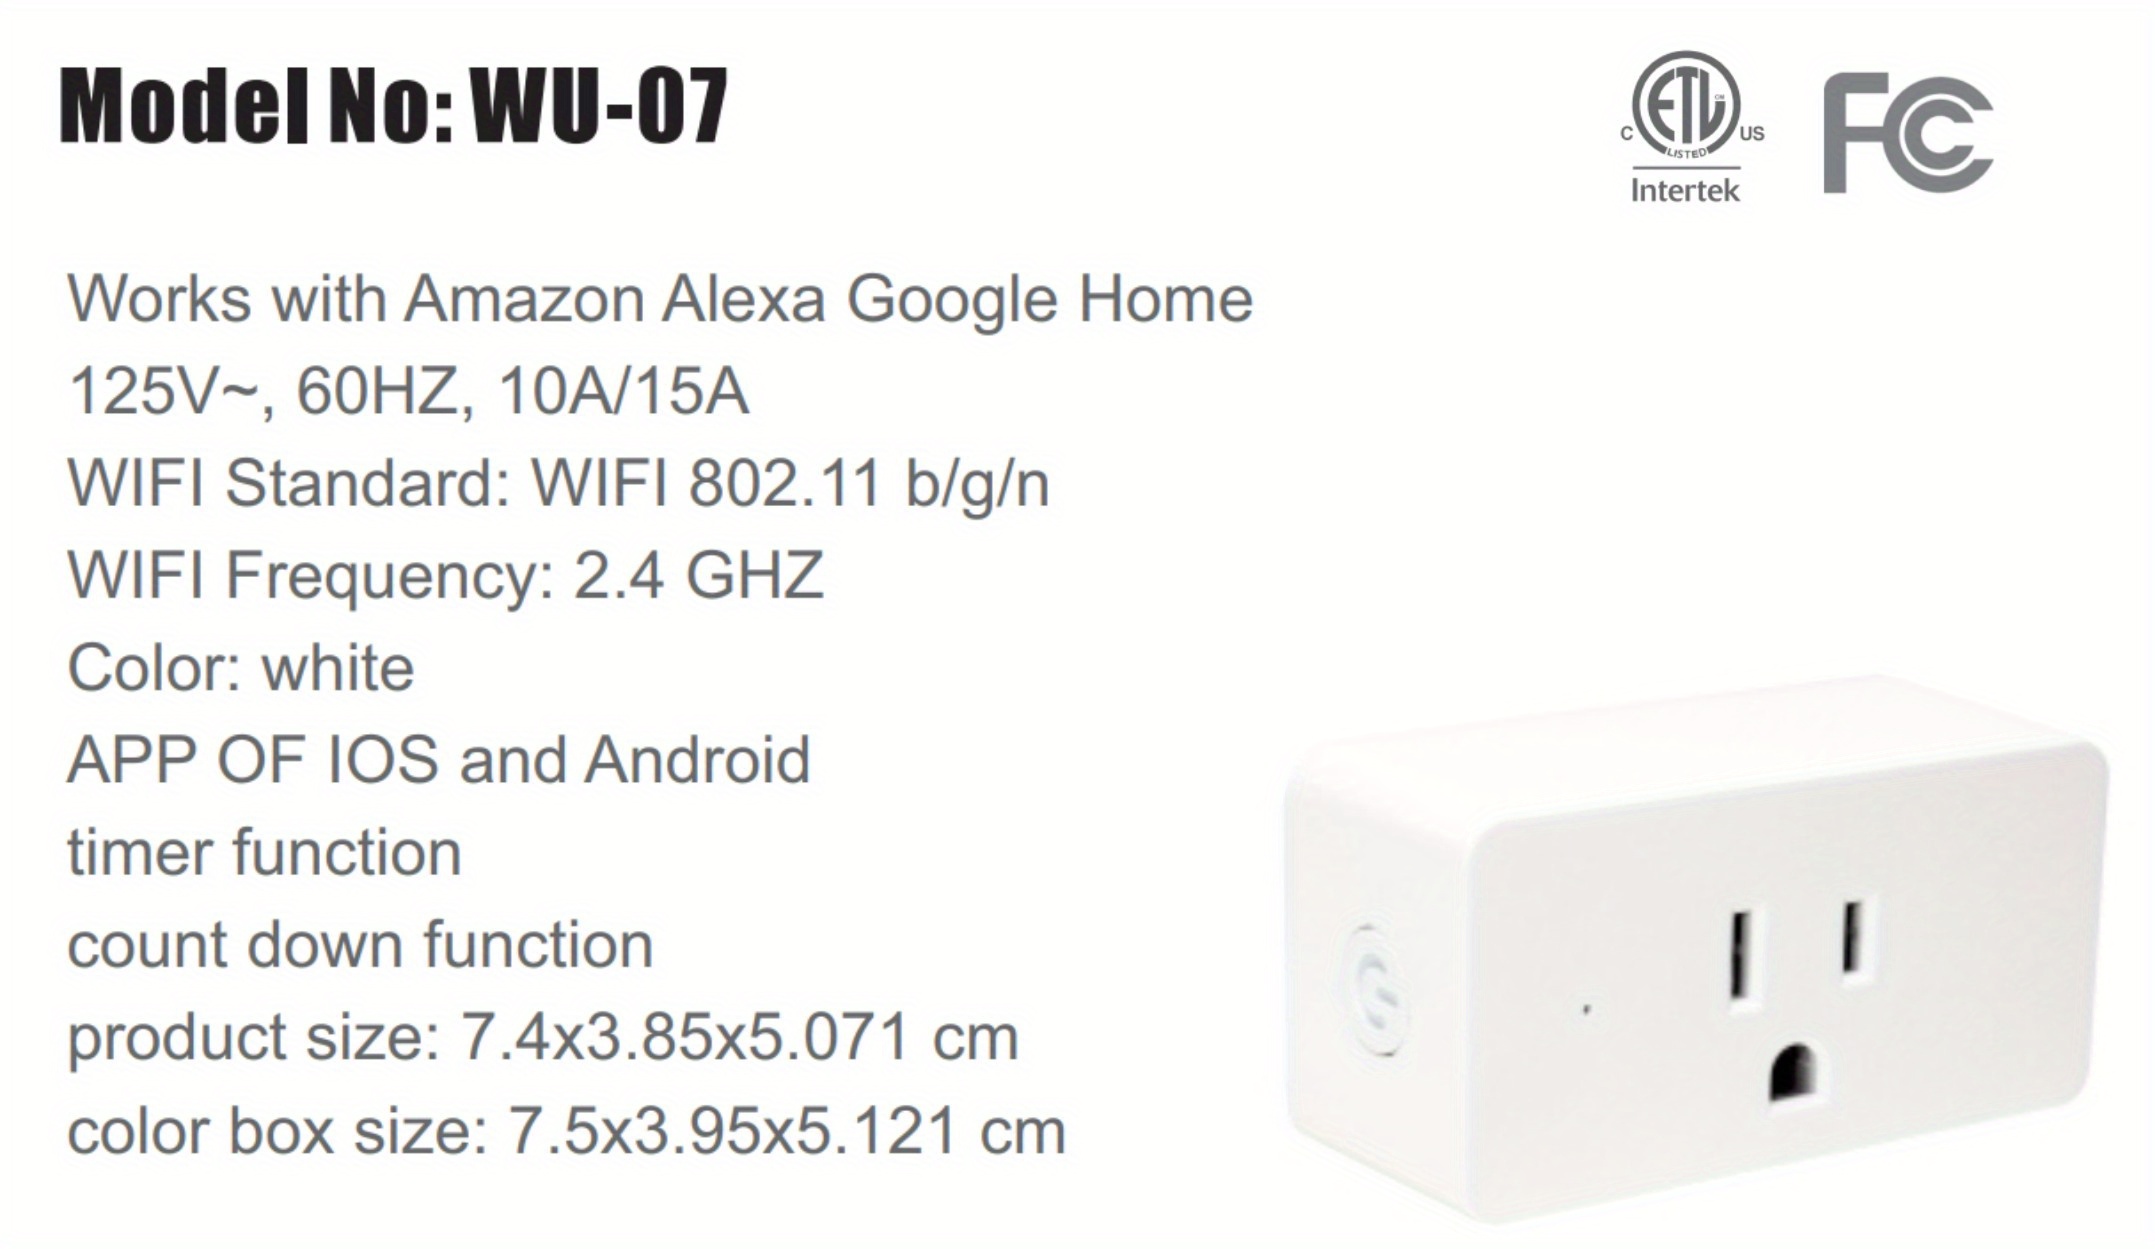 Acheter Prise intelligente WiFi prise télécommande pour  Alexa Google  Home IFTTT